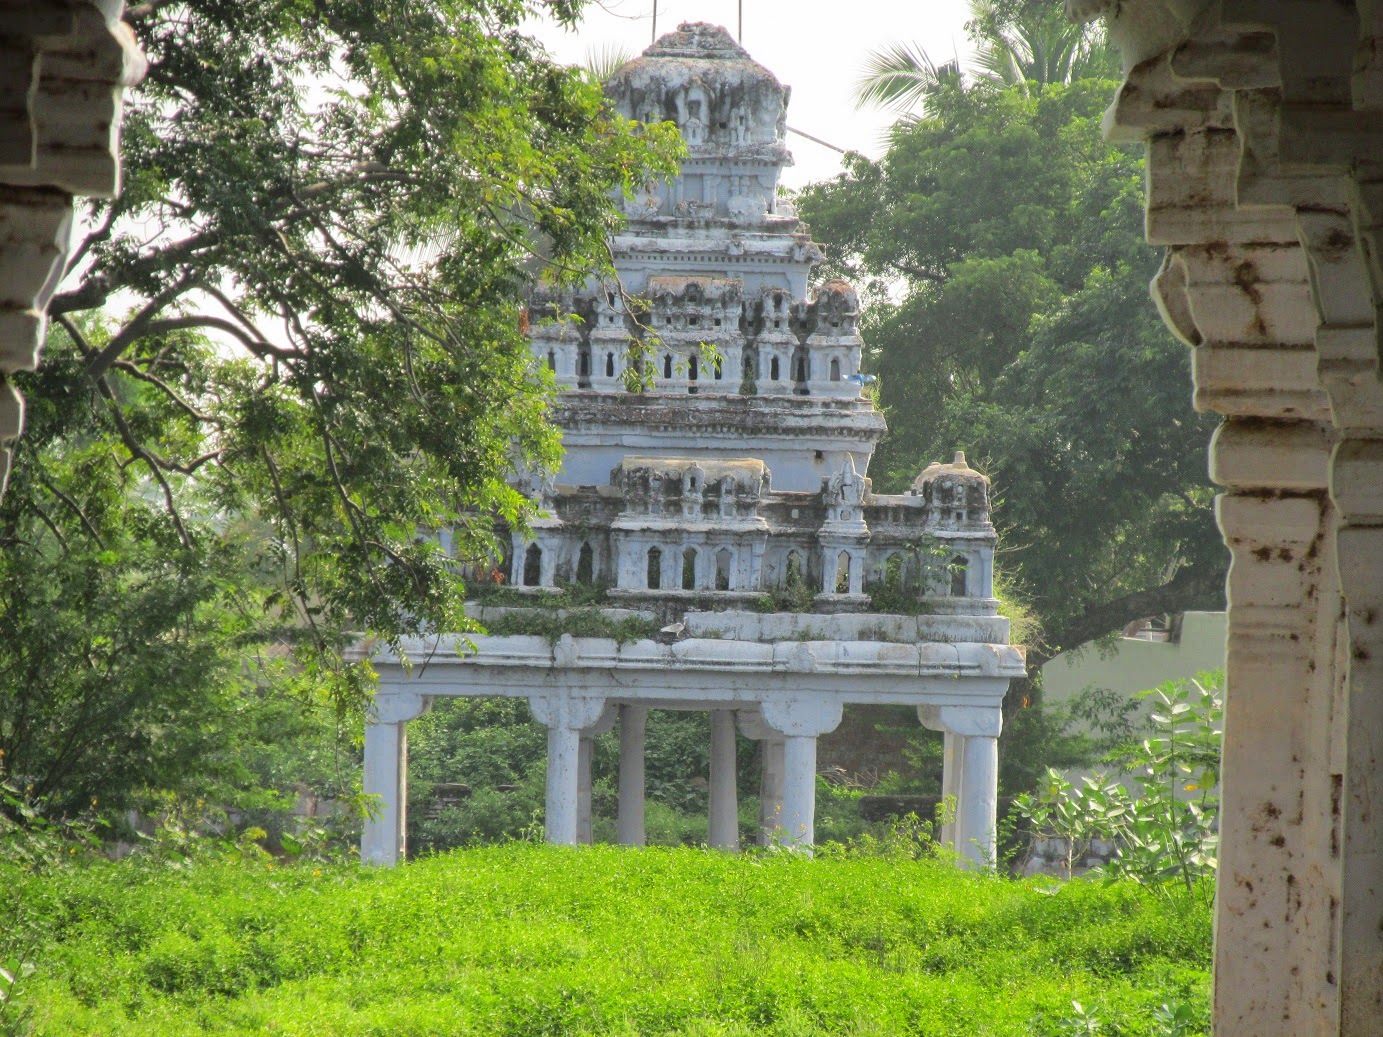 Veeravanallur Bhoominathar Temple